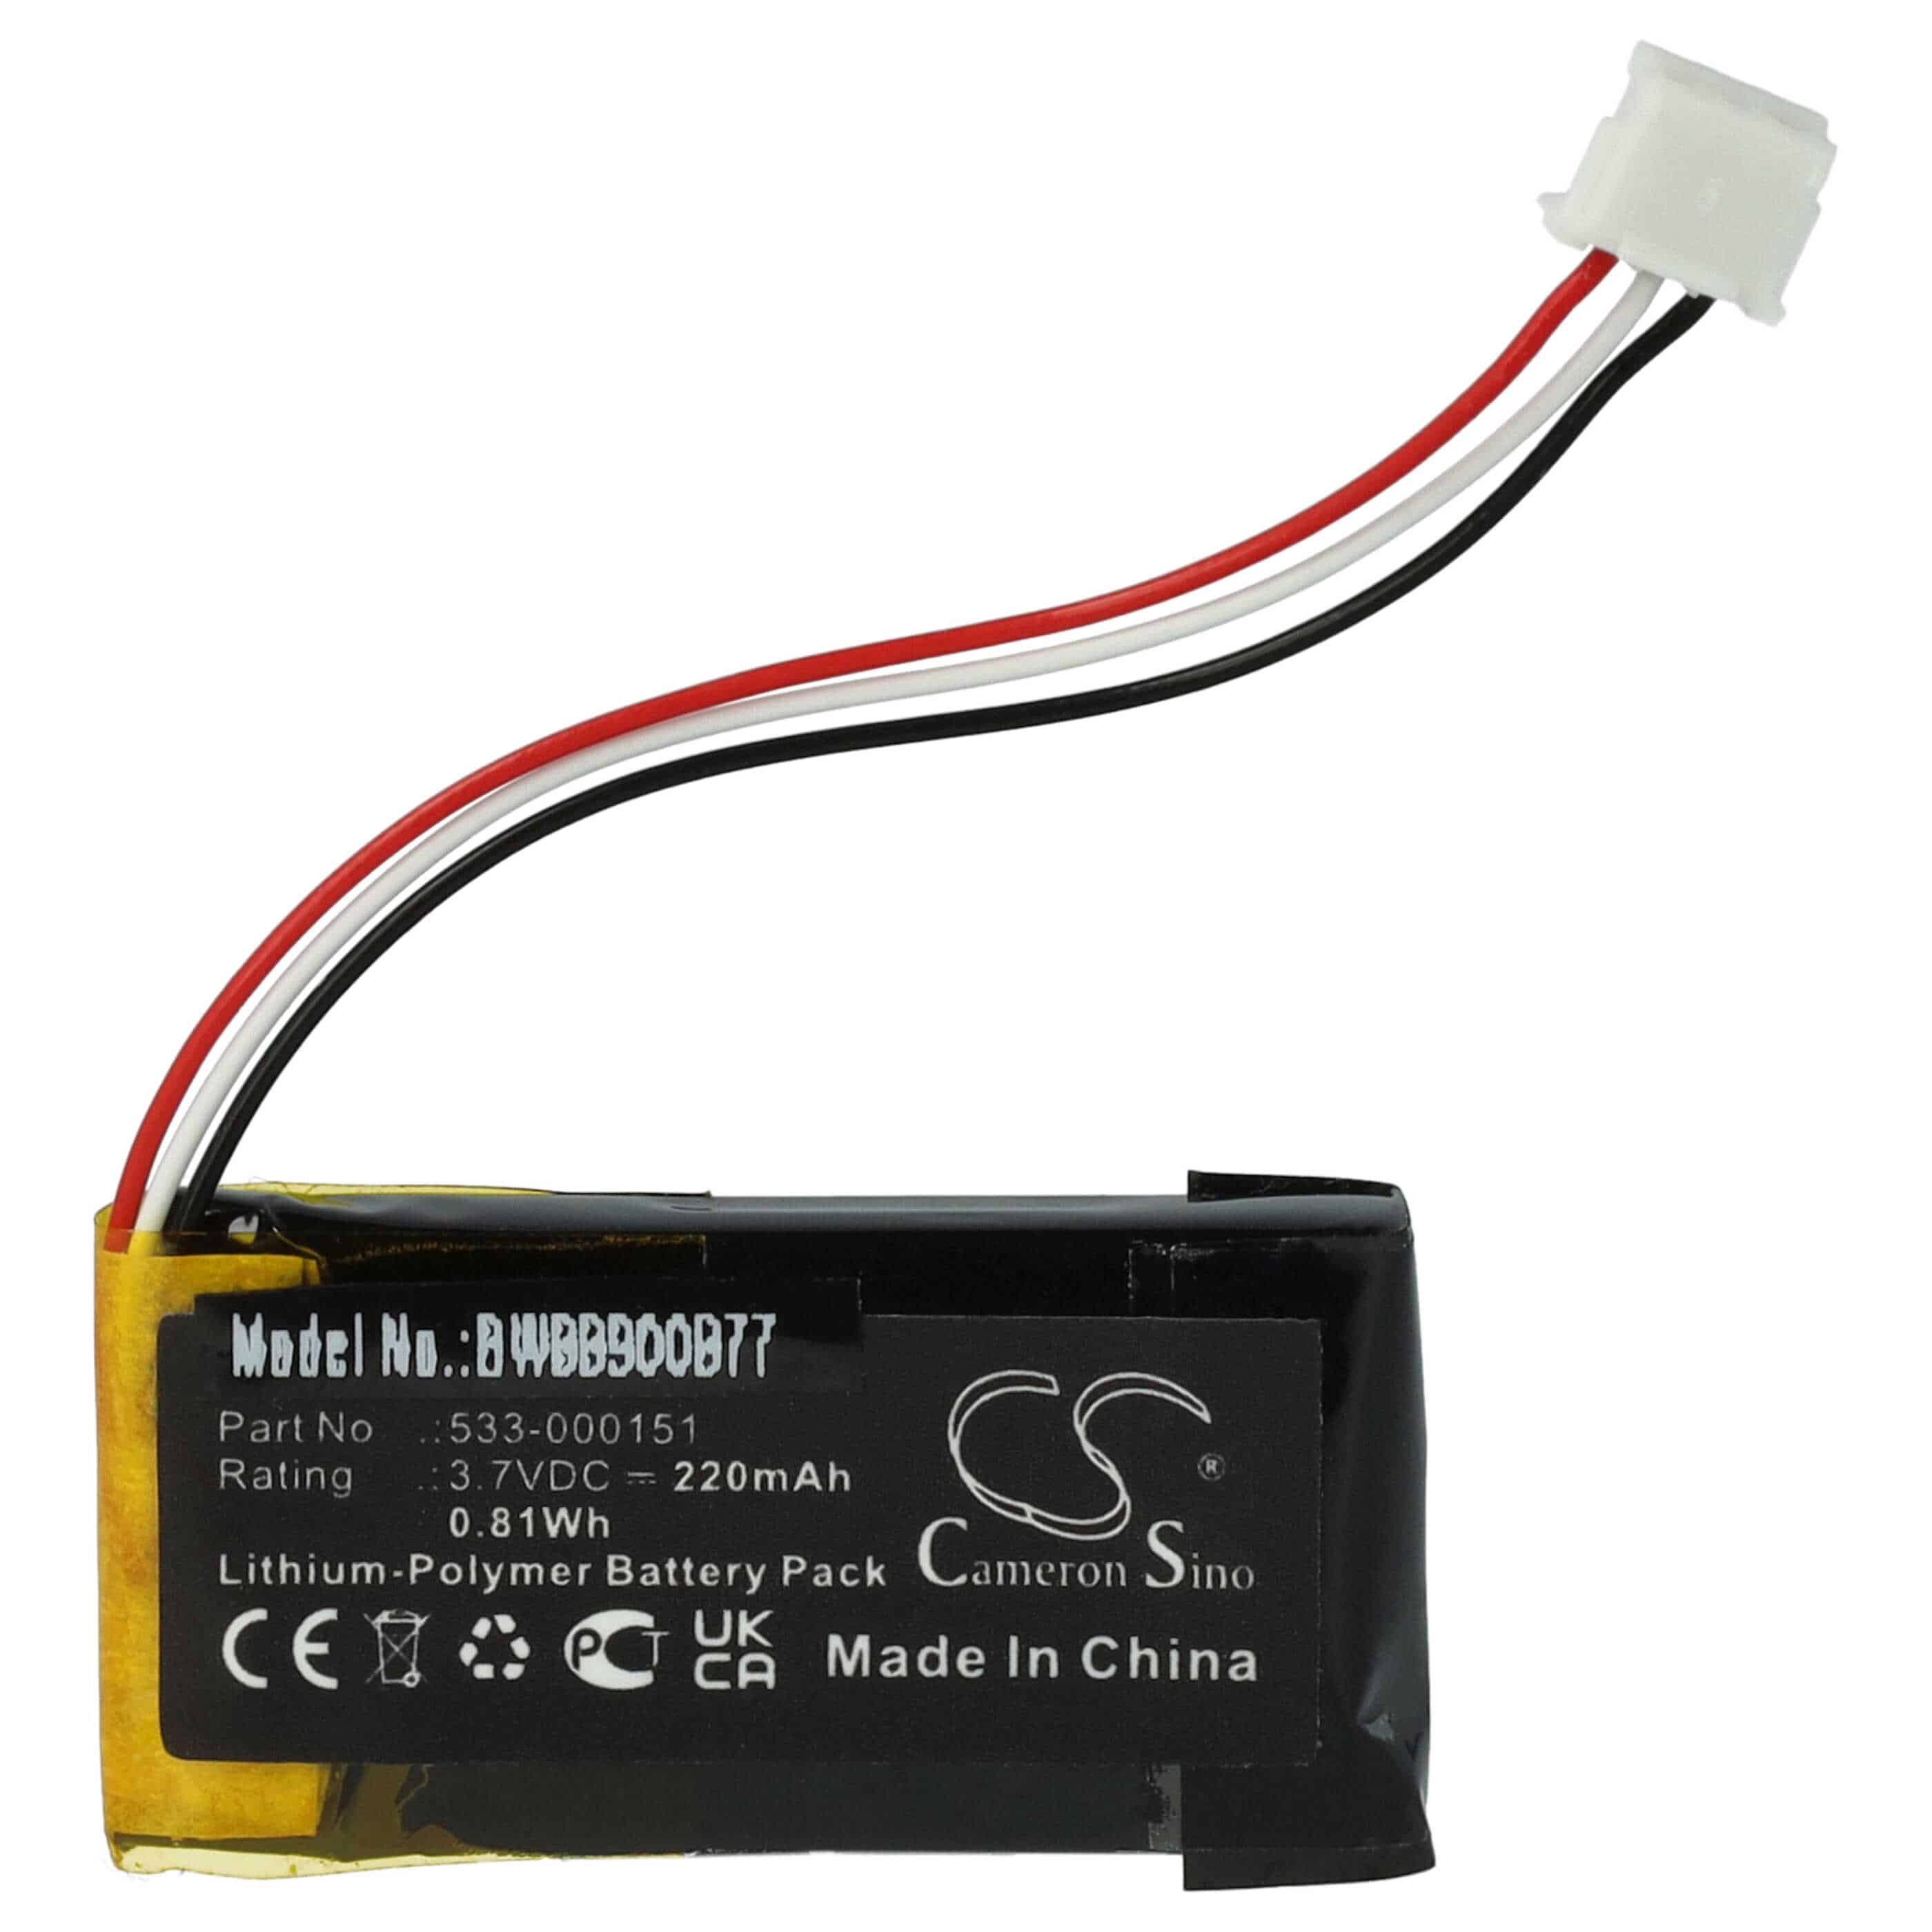 Batterie remplace Logitech 533-000151, AHB521630PJT-04 pour souris sans-fil - 220mAh 3,7V Li-polymère